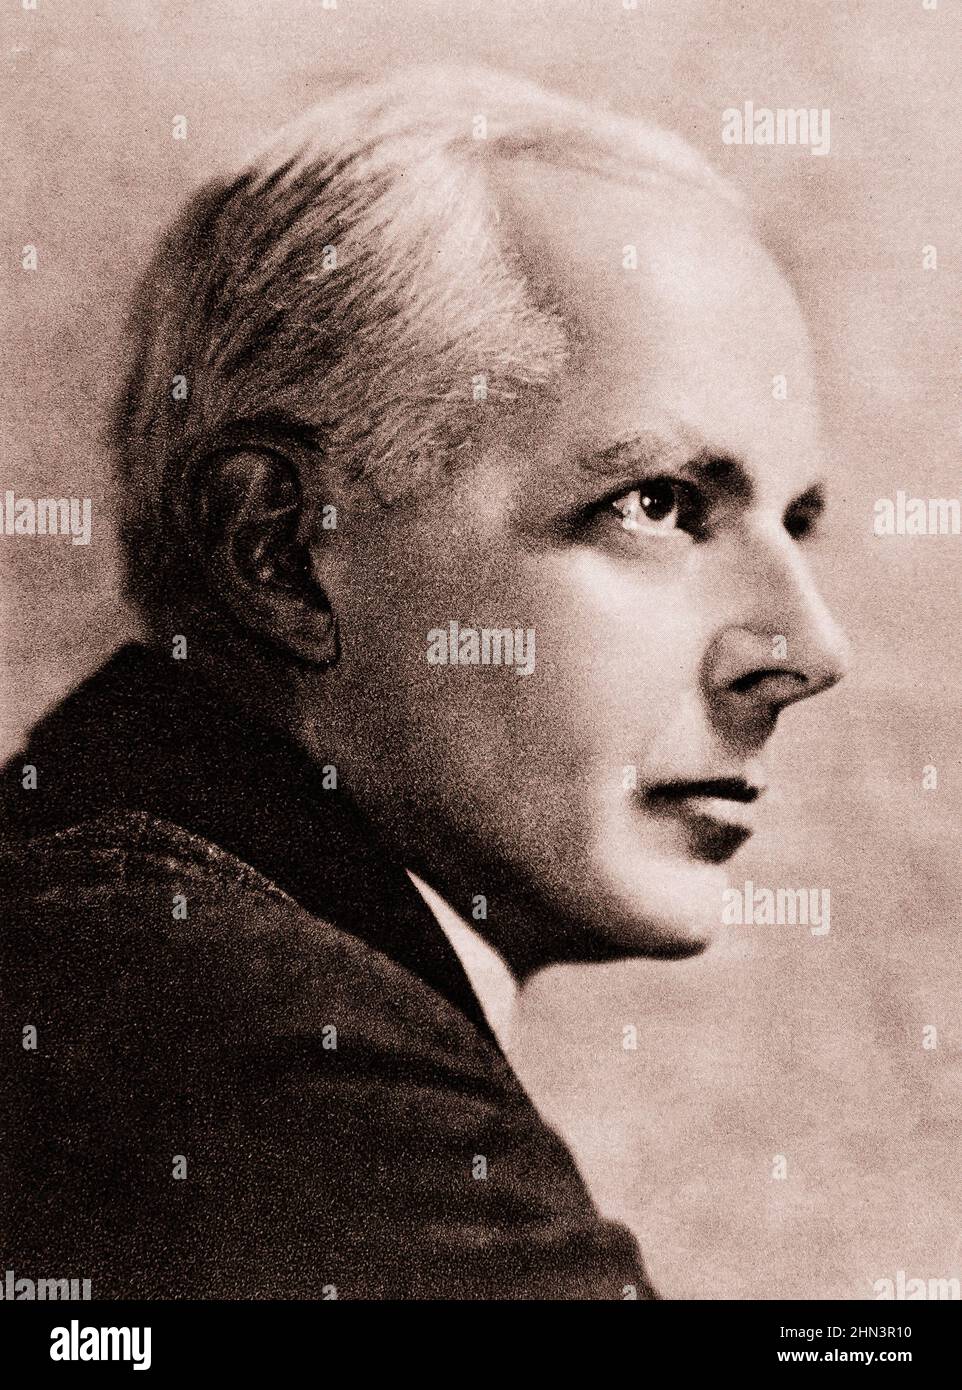 Vintage-Foto von Béla Bartók. 1922 Komponist, Pianist und Ethnomusikologe Béla Bartók (1881-1945) wurde in Nagyszentmiklós, Ungarn (heute geboren Stockfoto